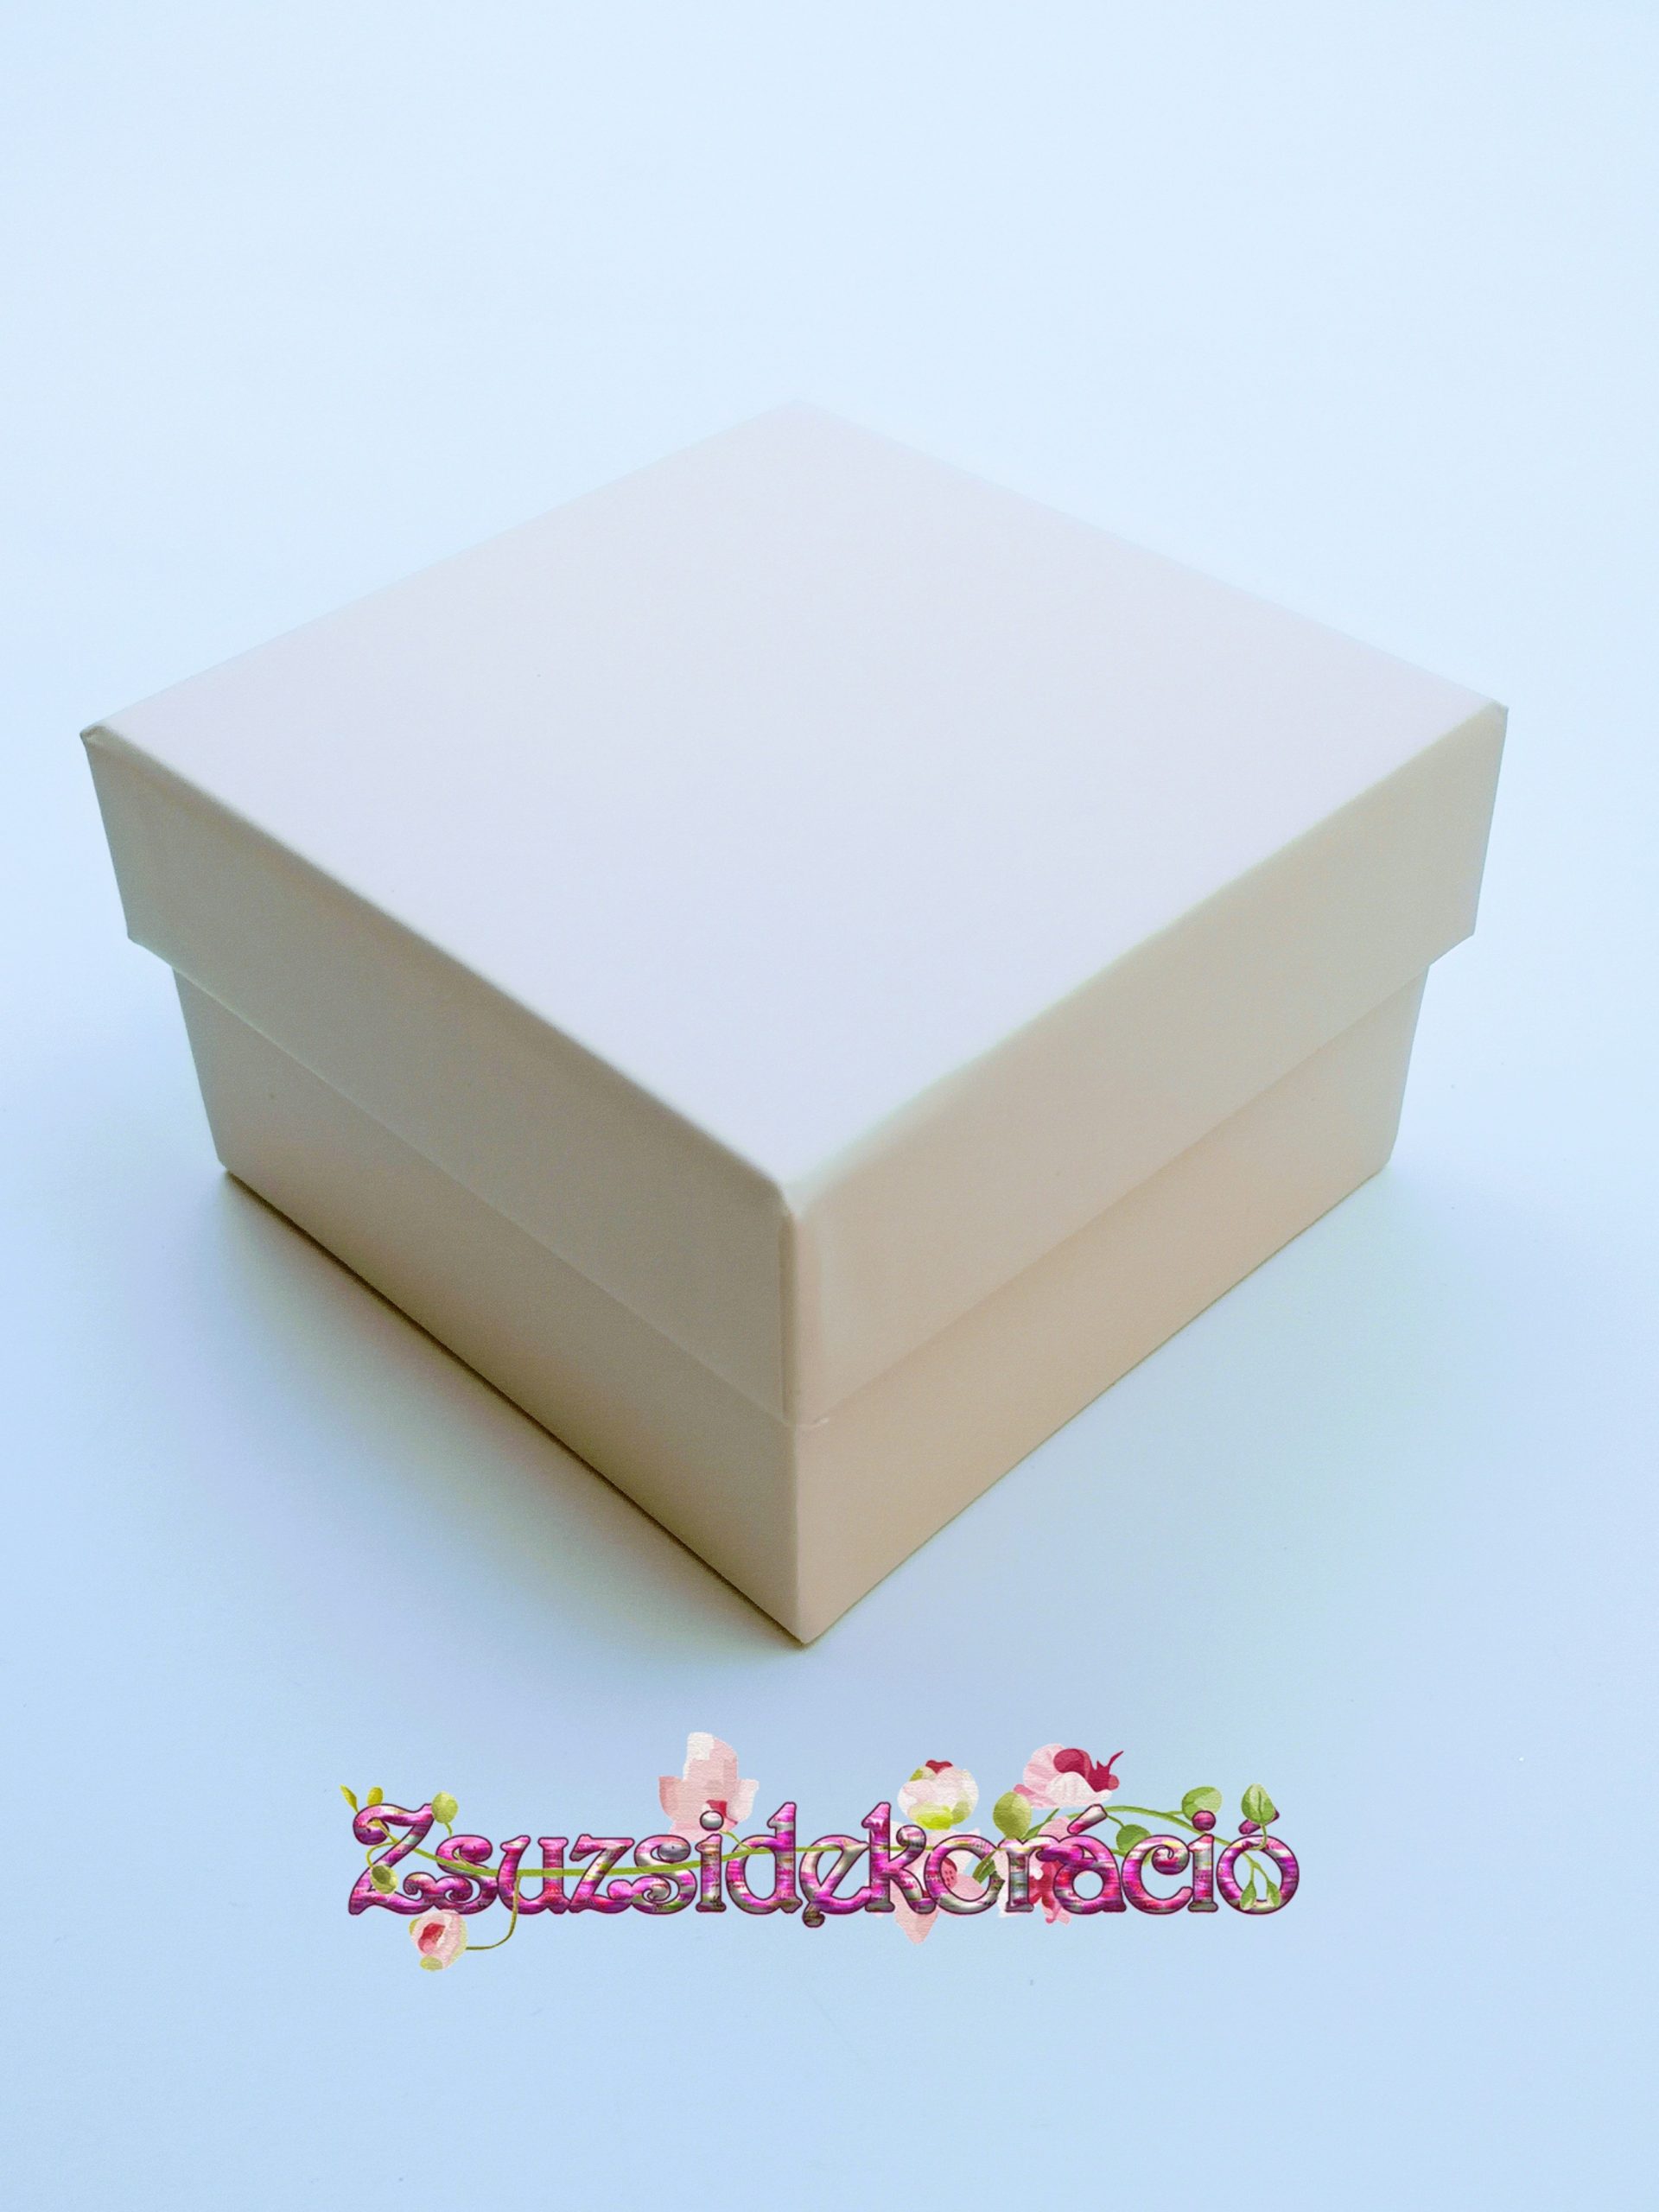 1 db-os kocka doboz 9x9x5,5 cm Pezsgő